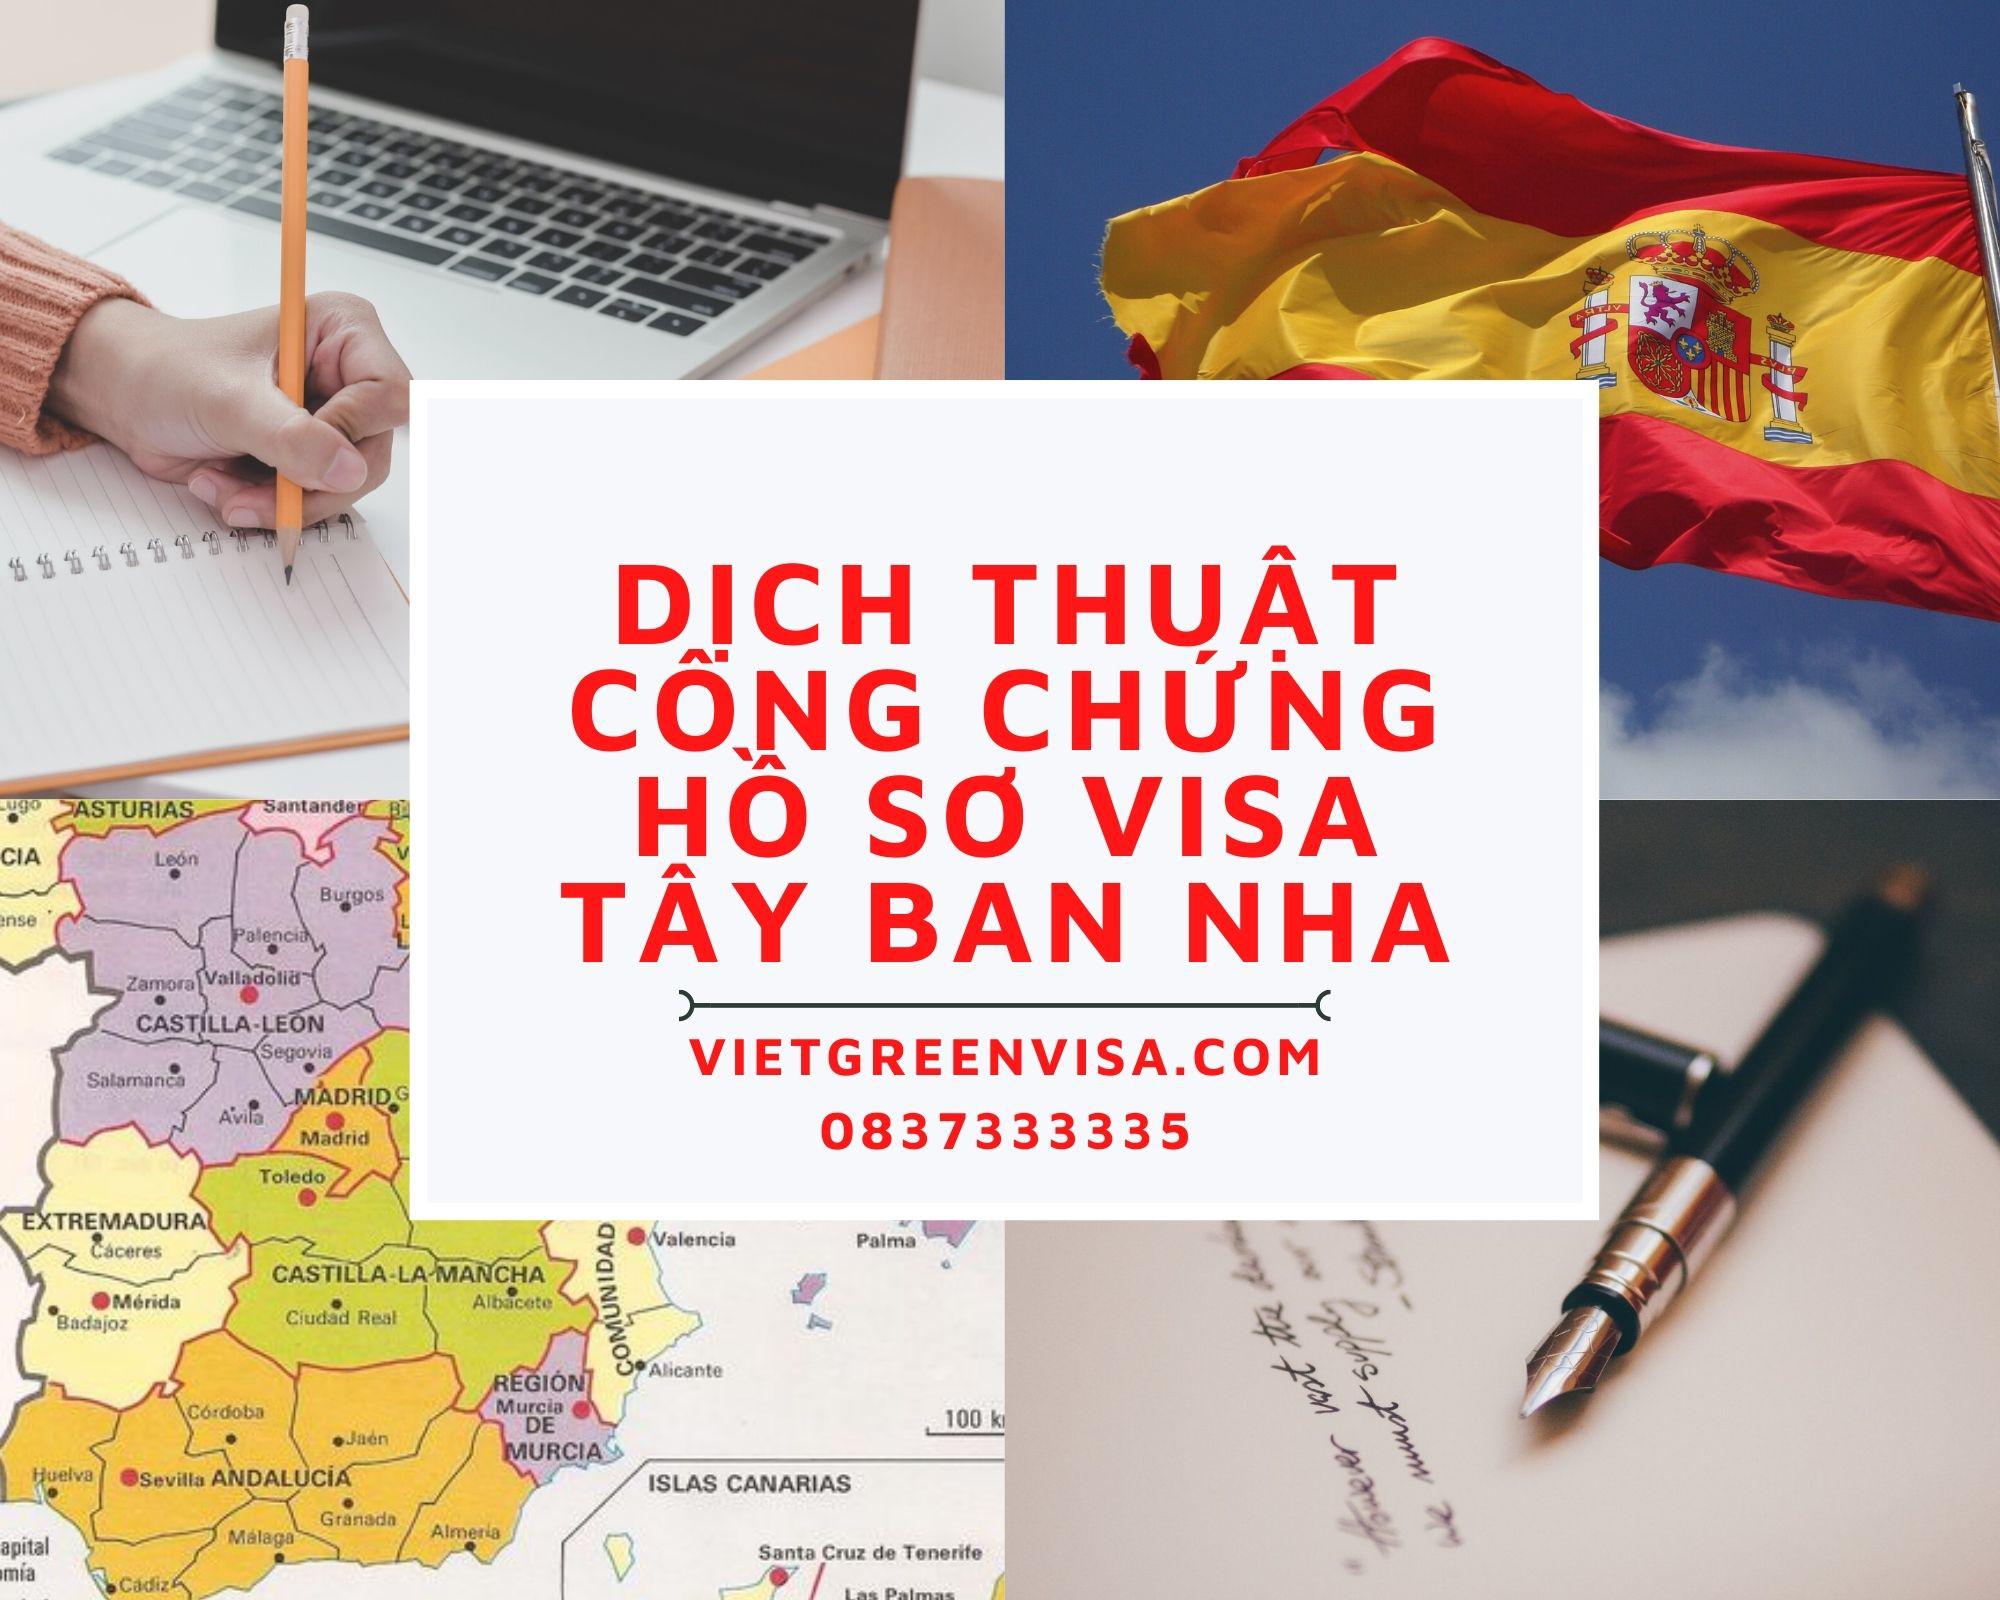 Tư vấn dịch thuật công chứng hồ sơ visa du lịch, du học Tây Ban Nha nhanh rẻ